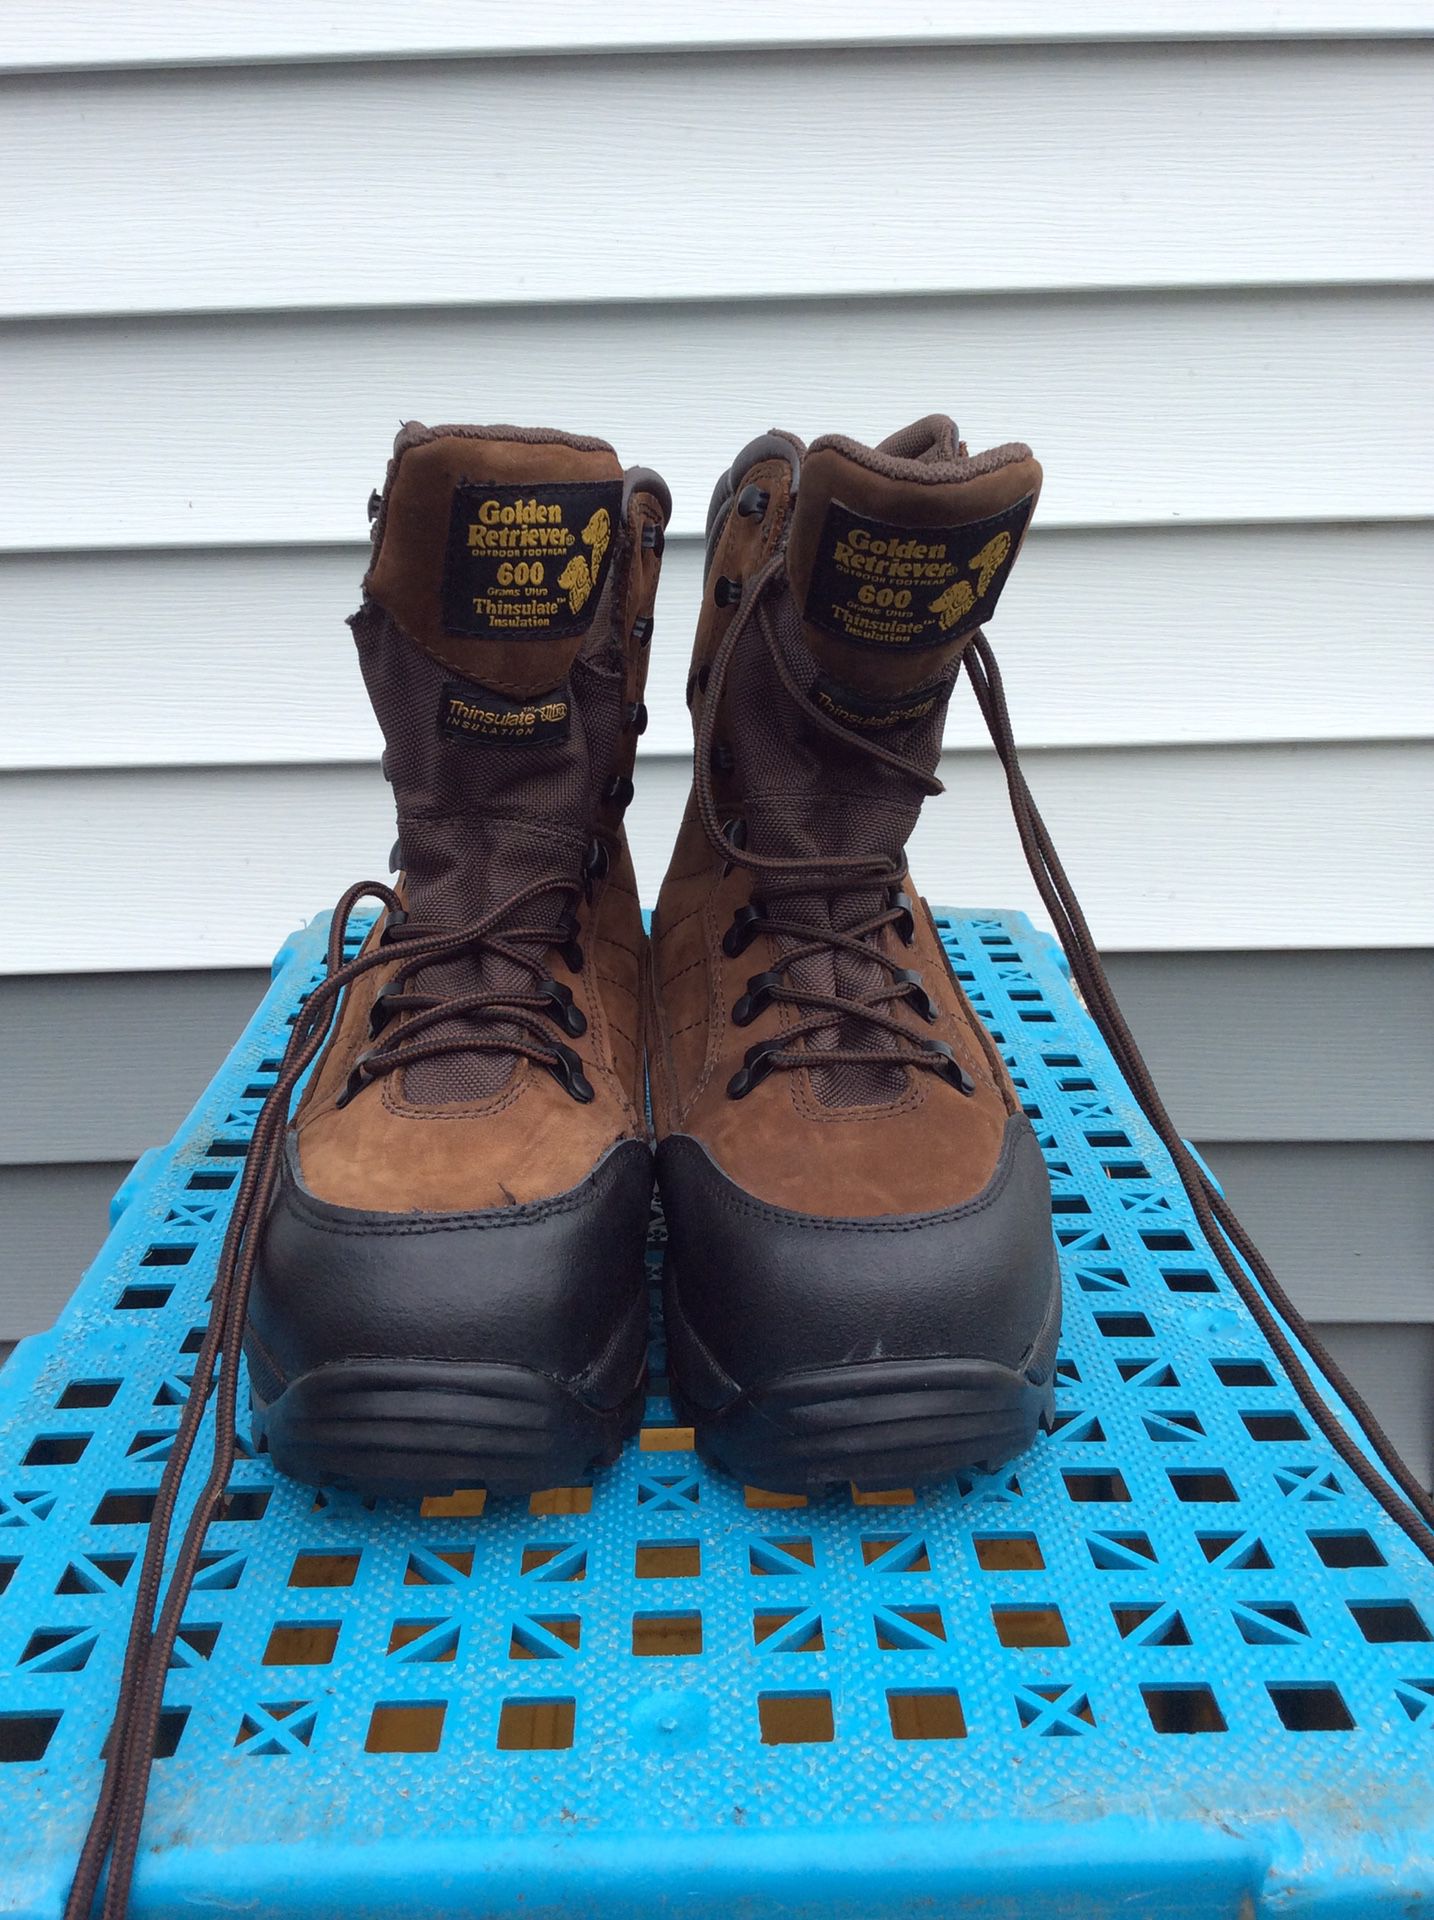 Women’s steel toe work boots